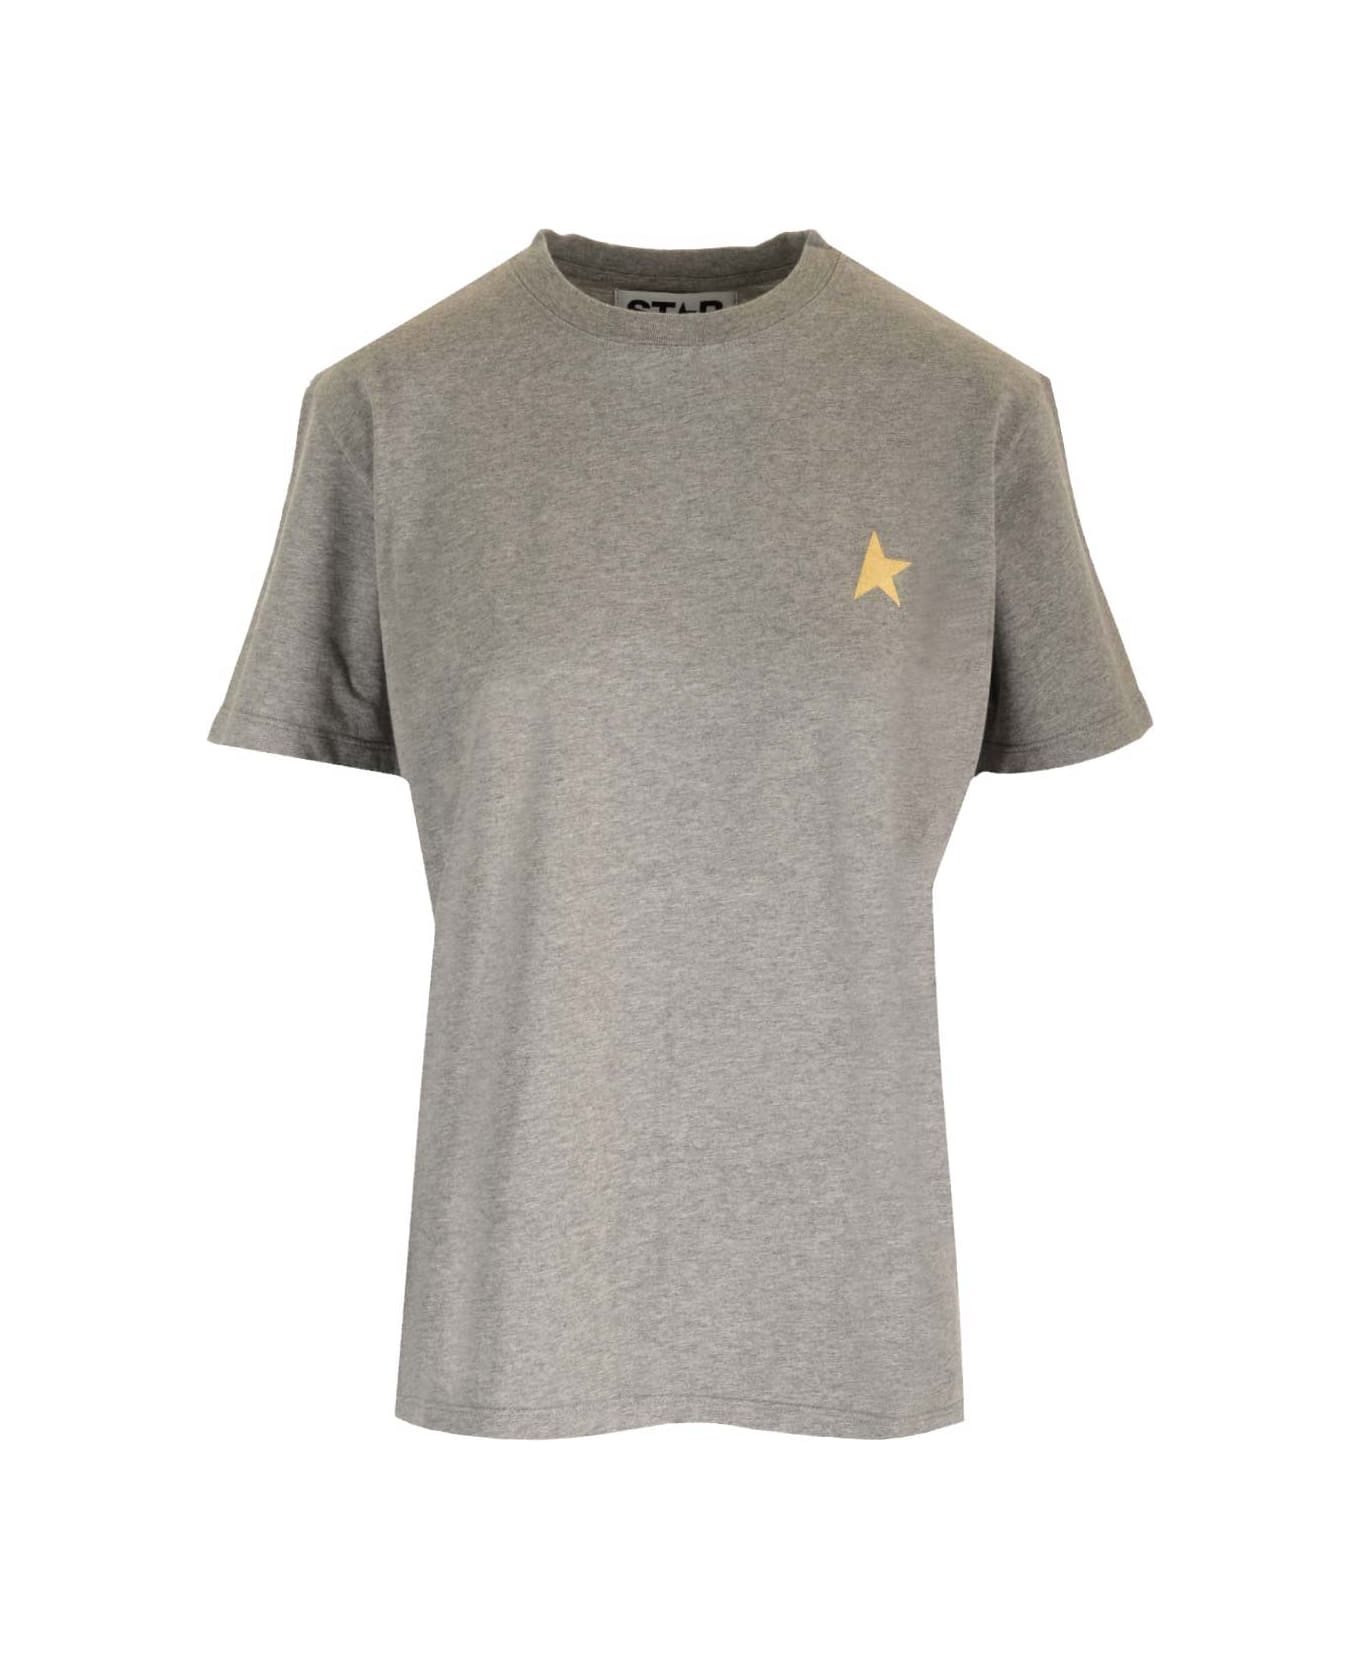 Golden Goose T-shirt 'star' - Gray